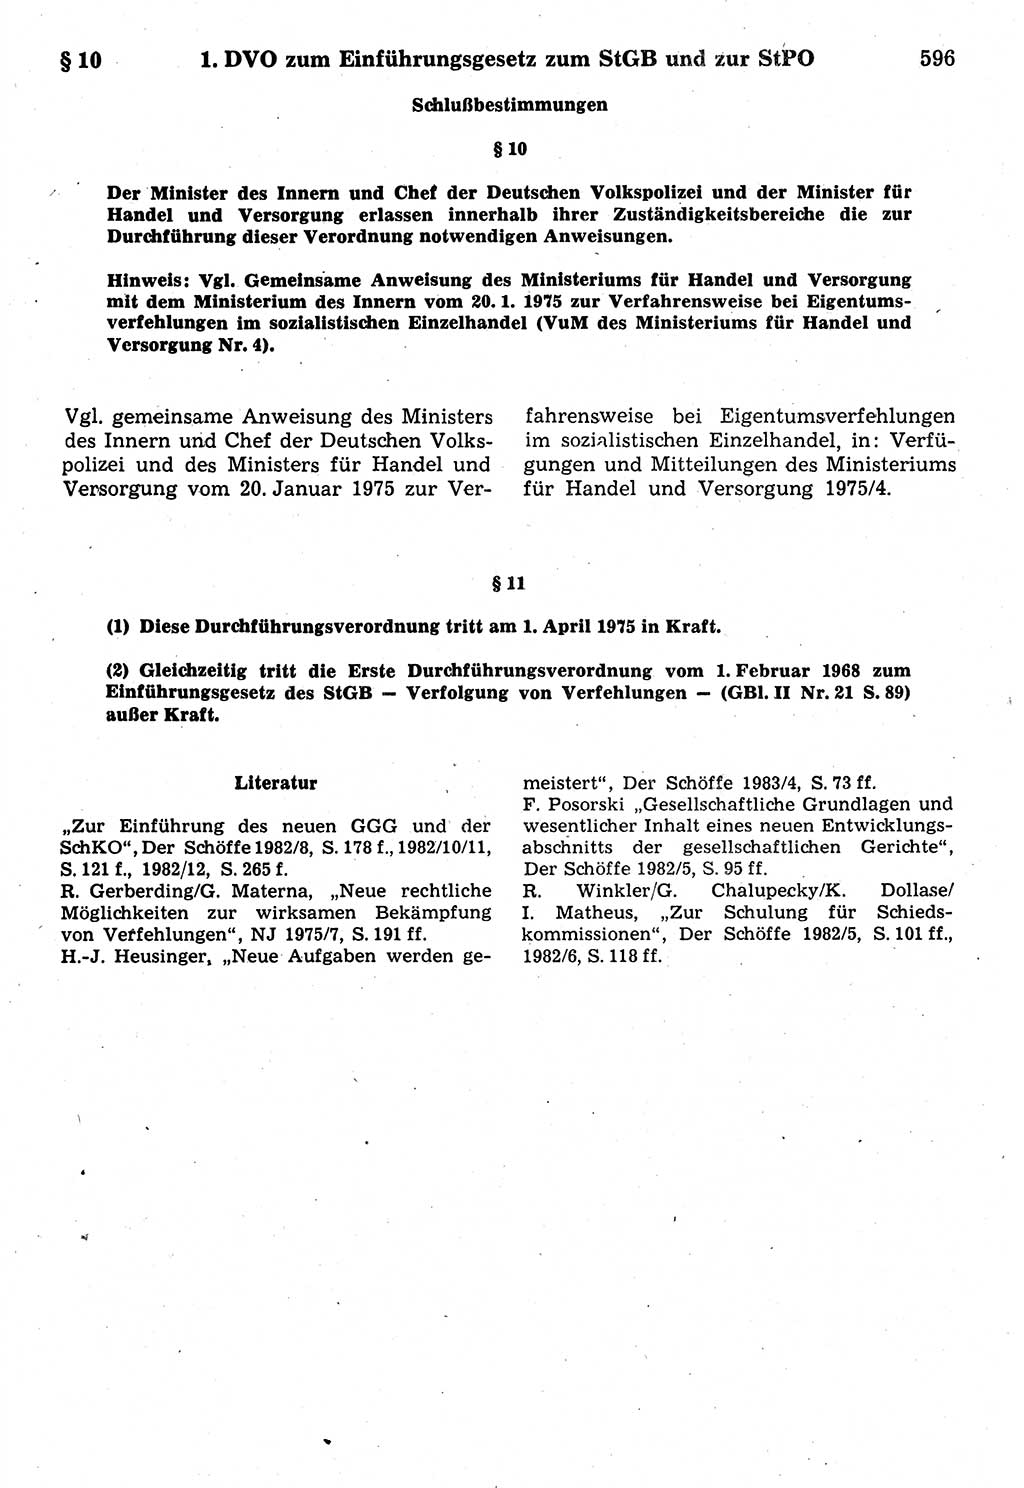 Strafrecht der Deutschen Demokratischen Republik (DDR), Kommentar zum Strafgesetzbuch (StGB) 1987, Seite 596 (Strafr. DDR Komm. StGB 1987, S. 596)